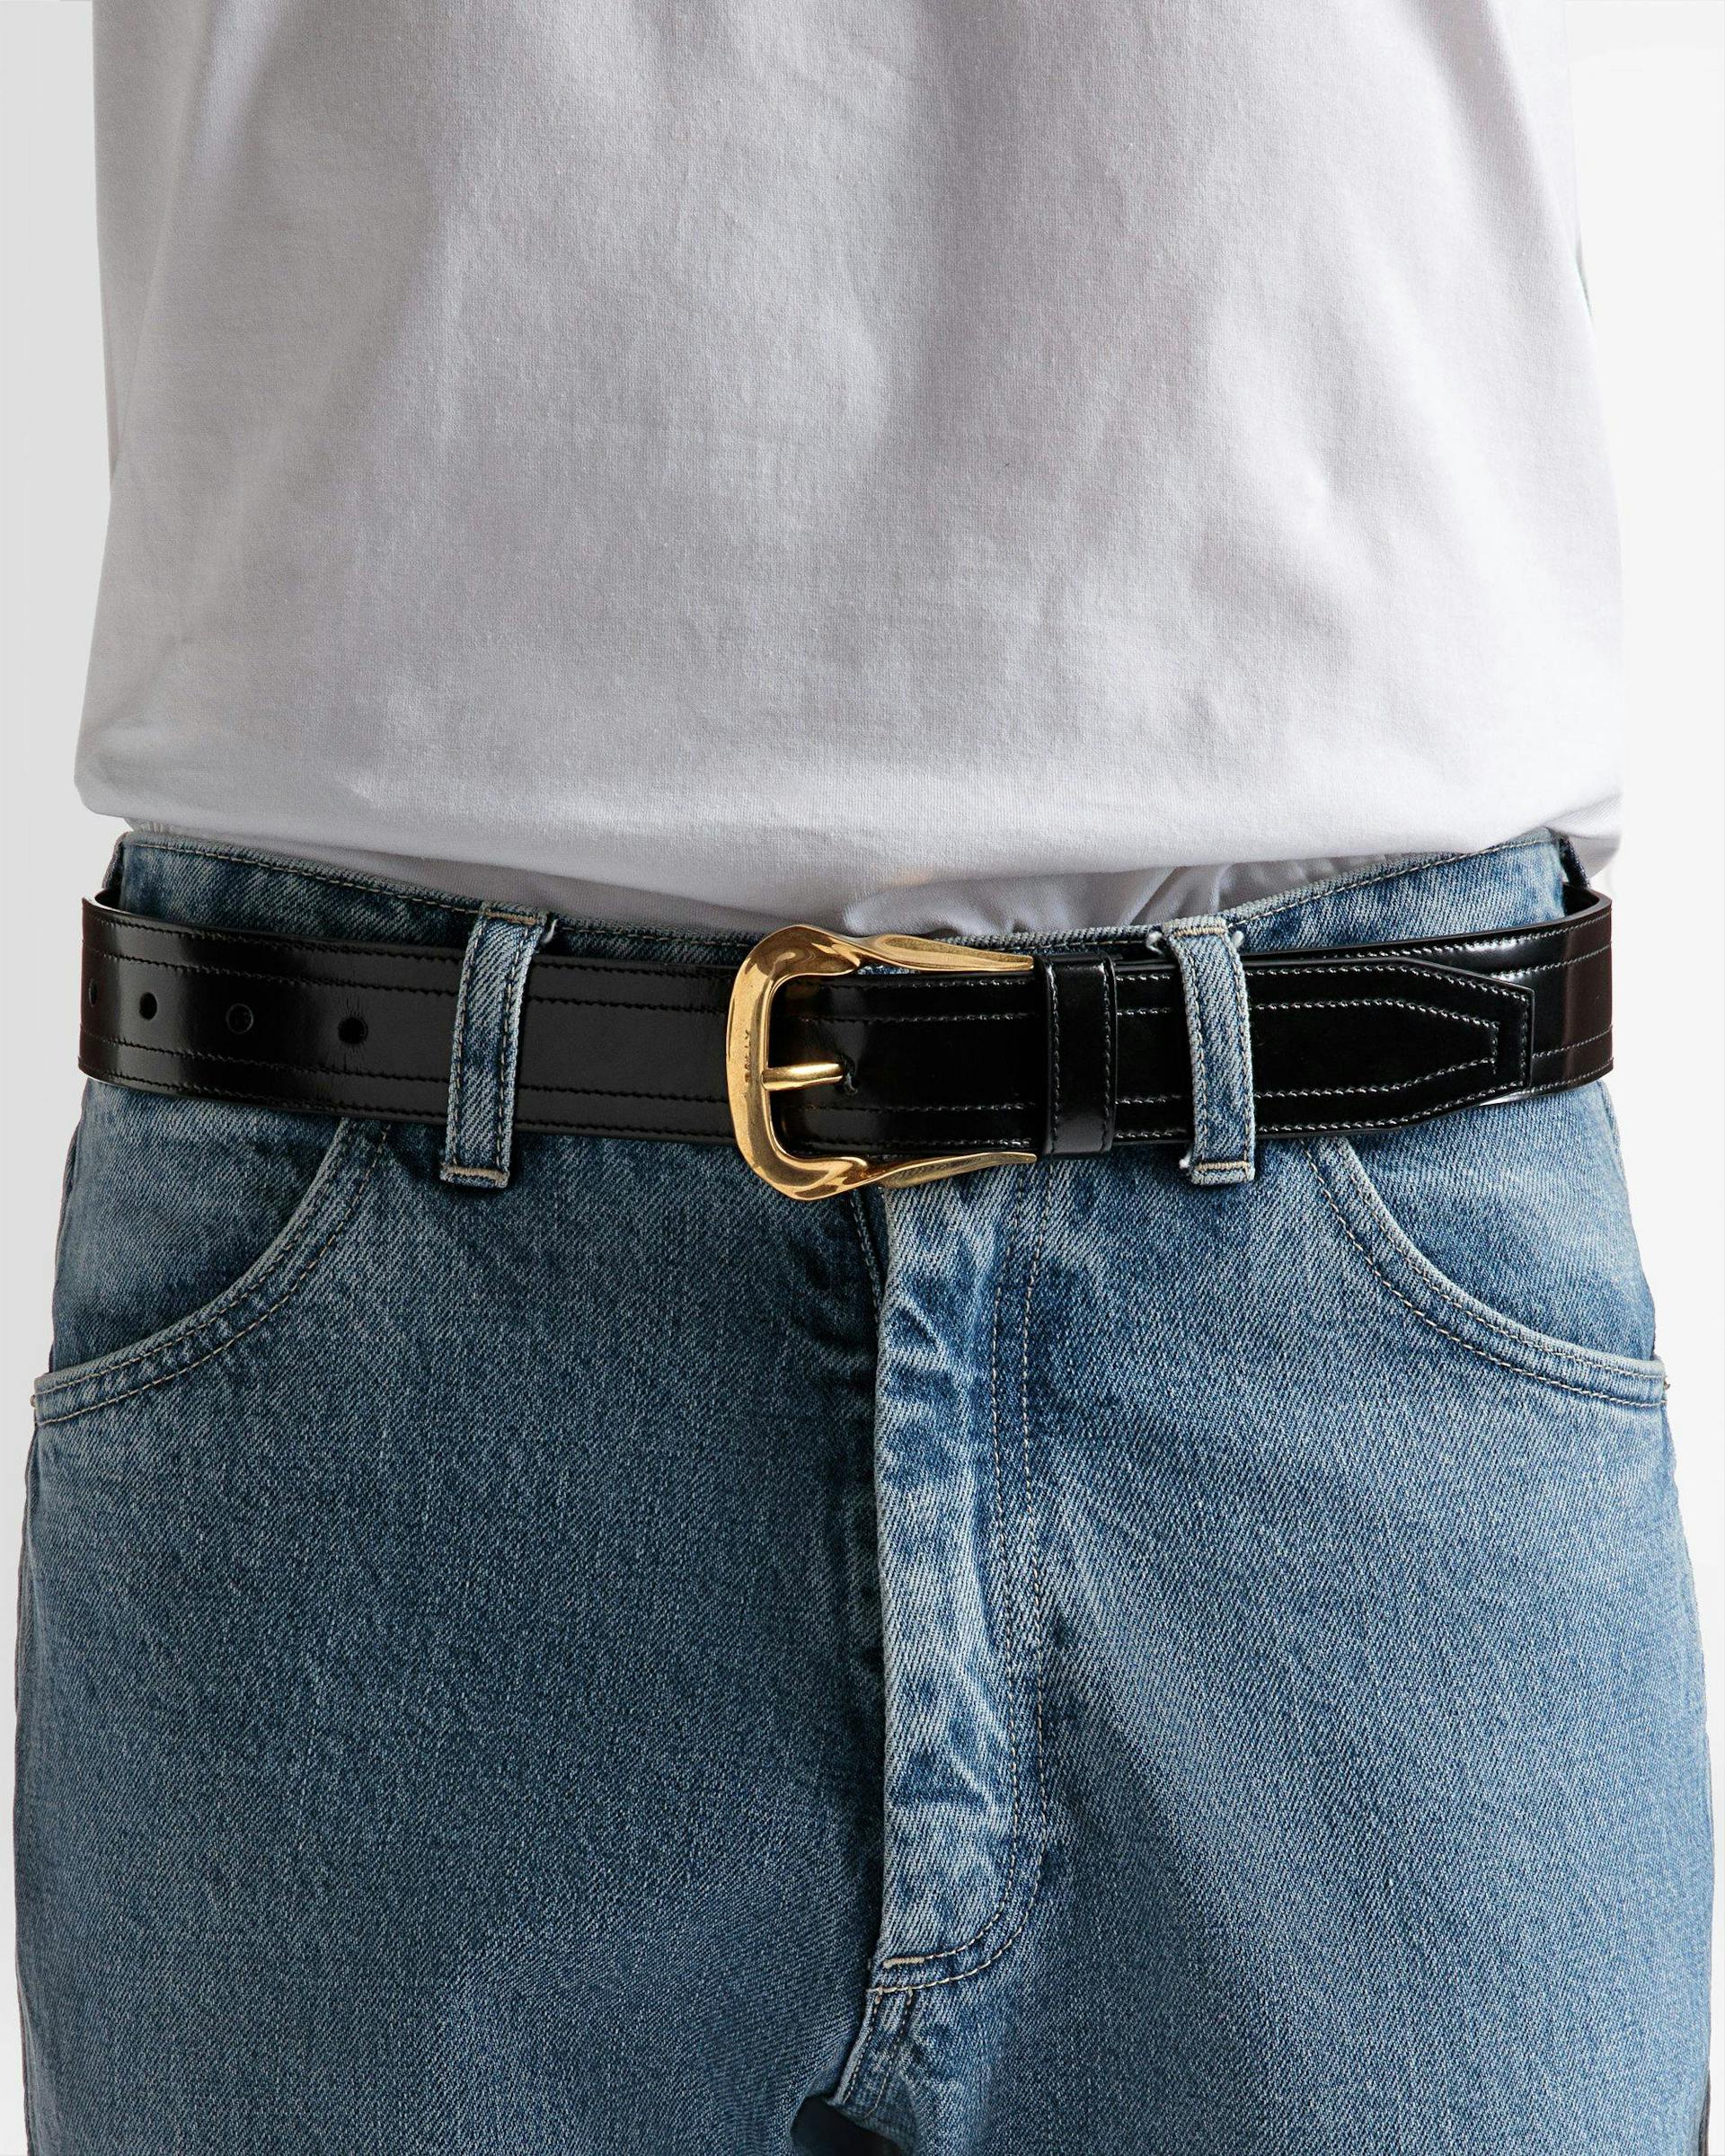 Emblem Buckle 35mm Belt In Black Leather - Men's - Bally - 03